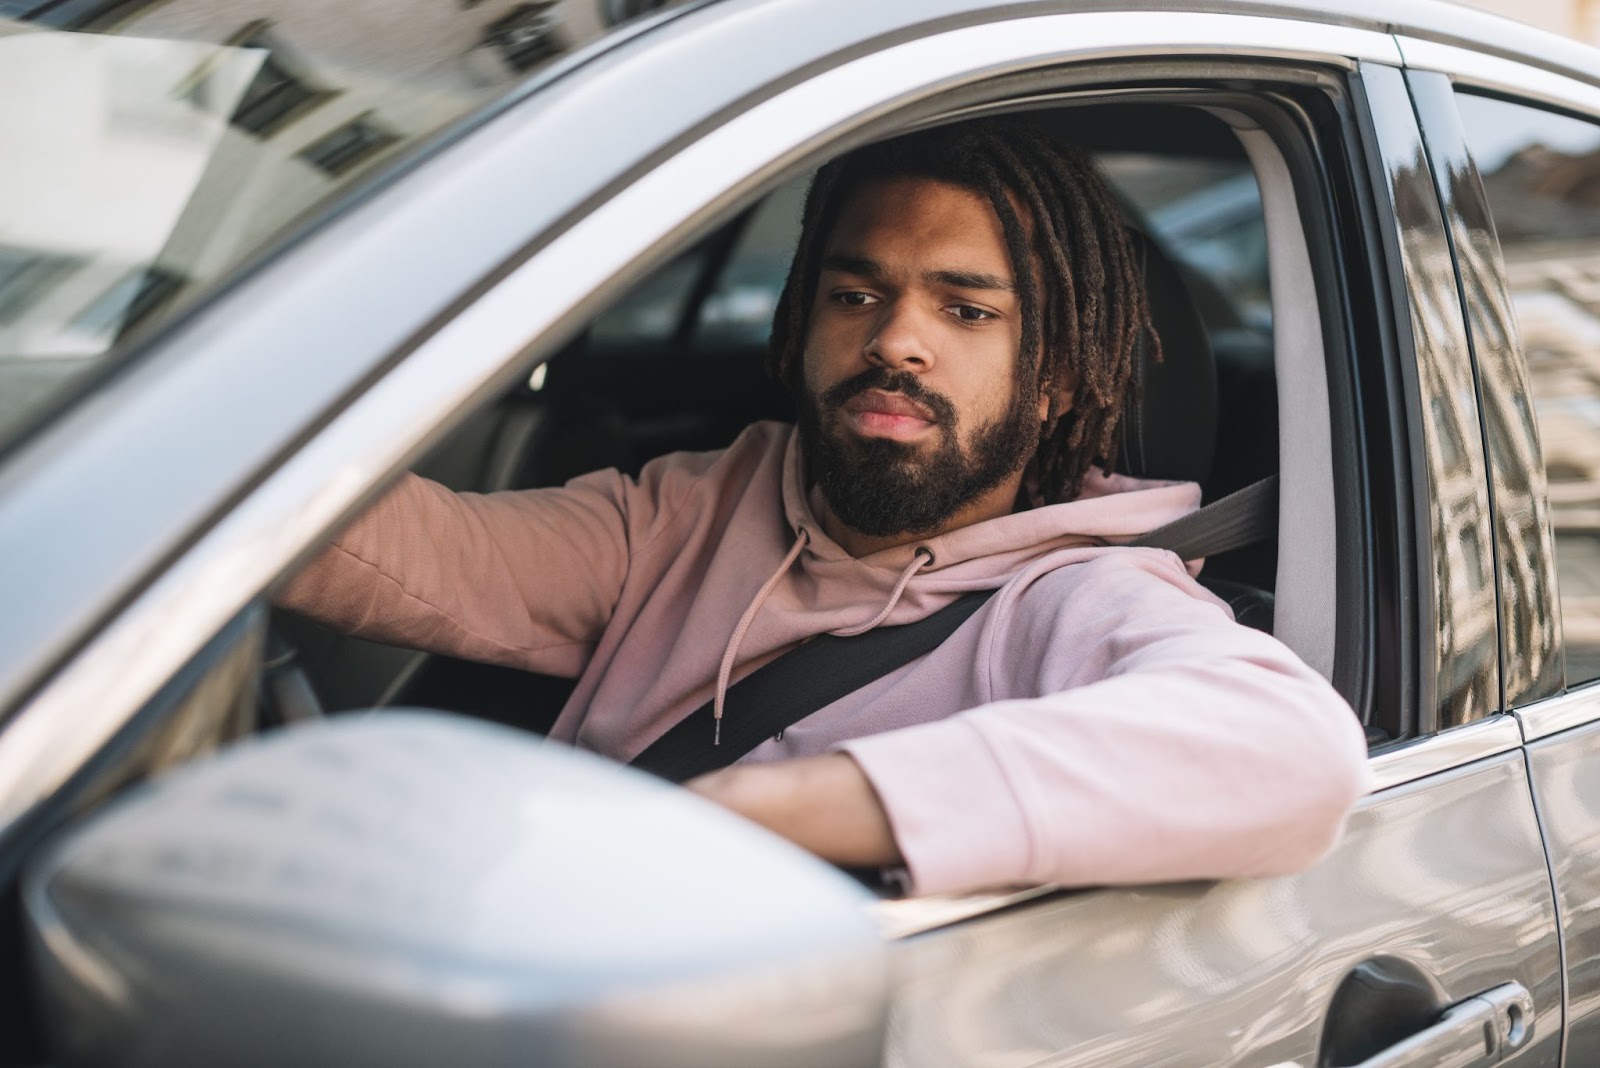 Homem dirigindo preocupado com o alinhamento e balanceamento de seu carro. Ele veste moletom rosa claro e apoia o braço na janela.